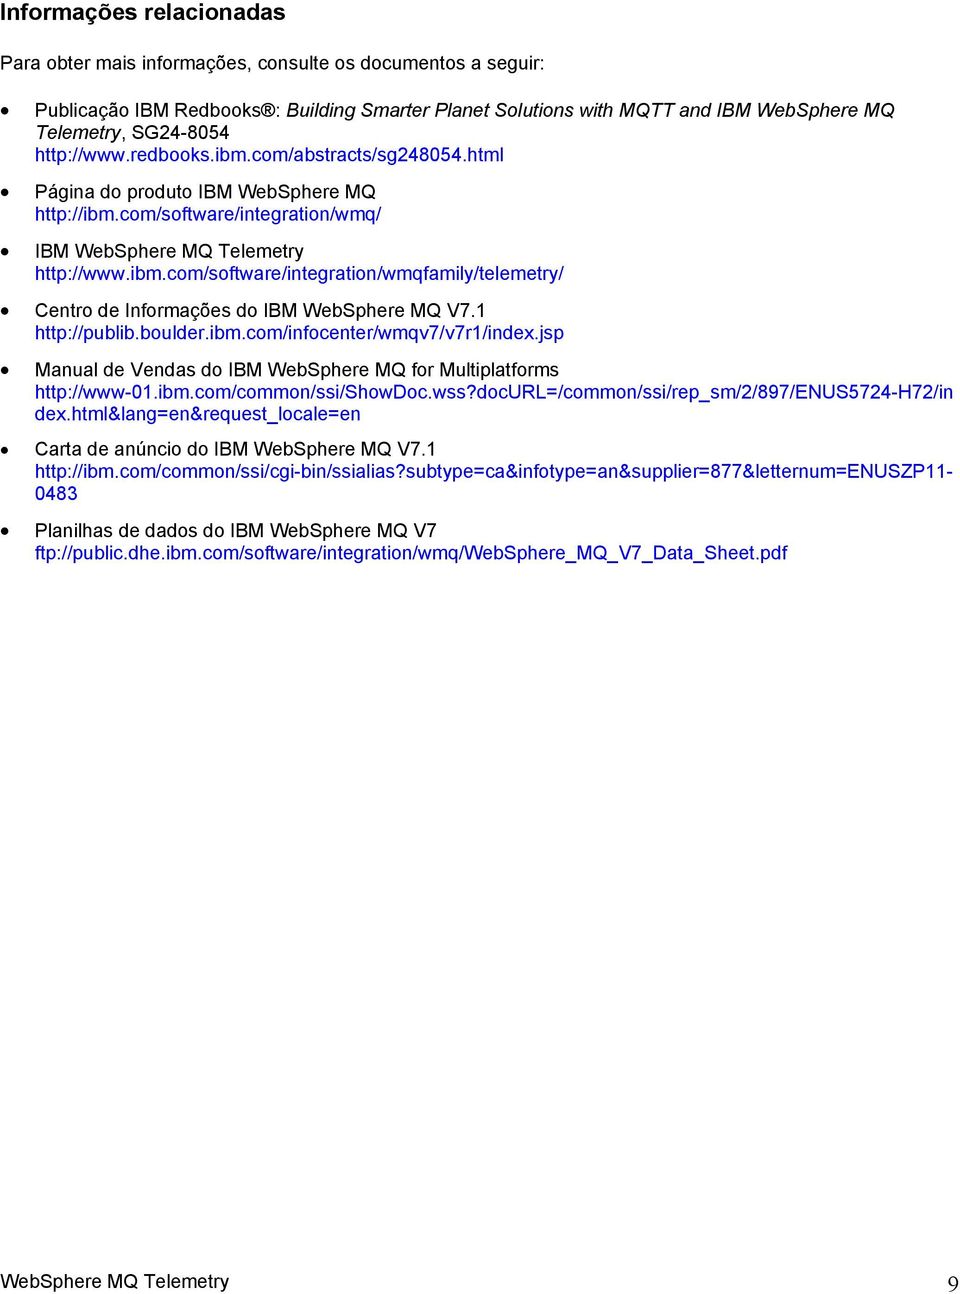 1 http://publib.boulder.ibm.com/infocenter/wmqv7/v7r1/index.jsp Manual de Vendas do IBM WebSphere MQ for Multiplatforms http://www-01.ibm.com/common/ssi/showdoc.wss?